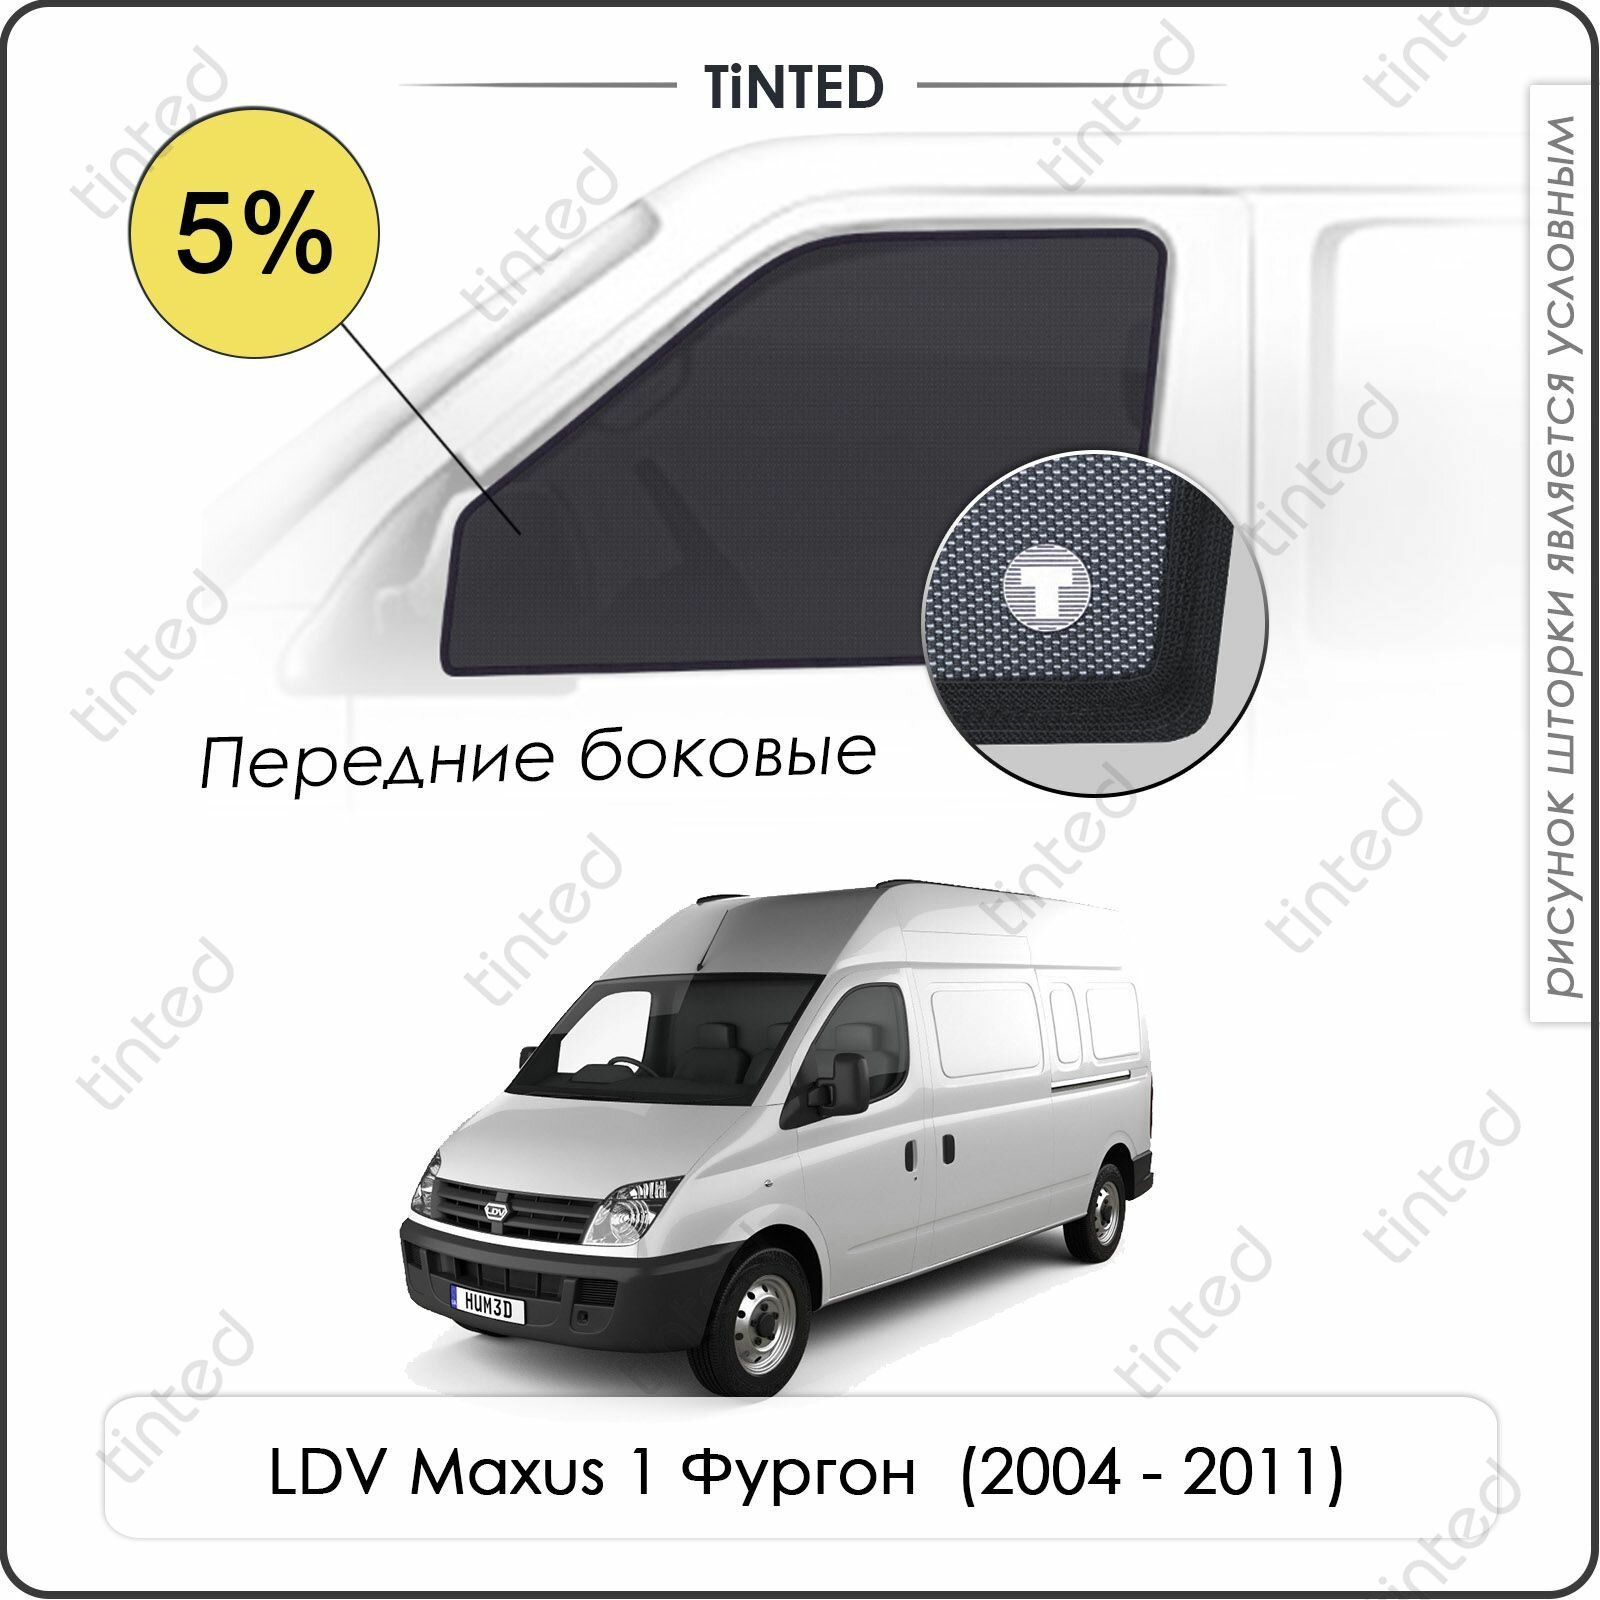 Шторки на автомобиль солнцезащитные LDV Maxus 1 Фургон 2дв. (2004 - 2011) на передние двери 5% сетки от солнца в машину ЛДВ максус Каркасные автошторки Premium